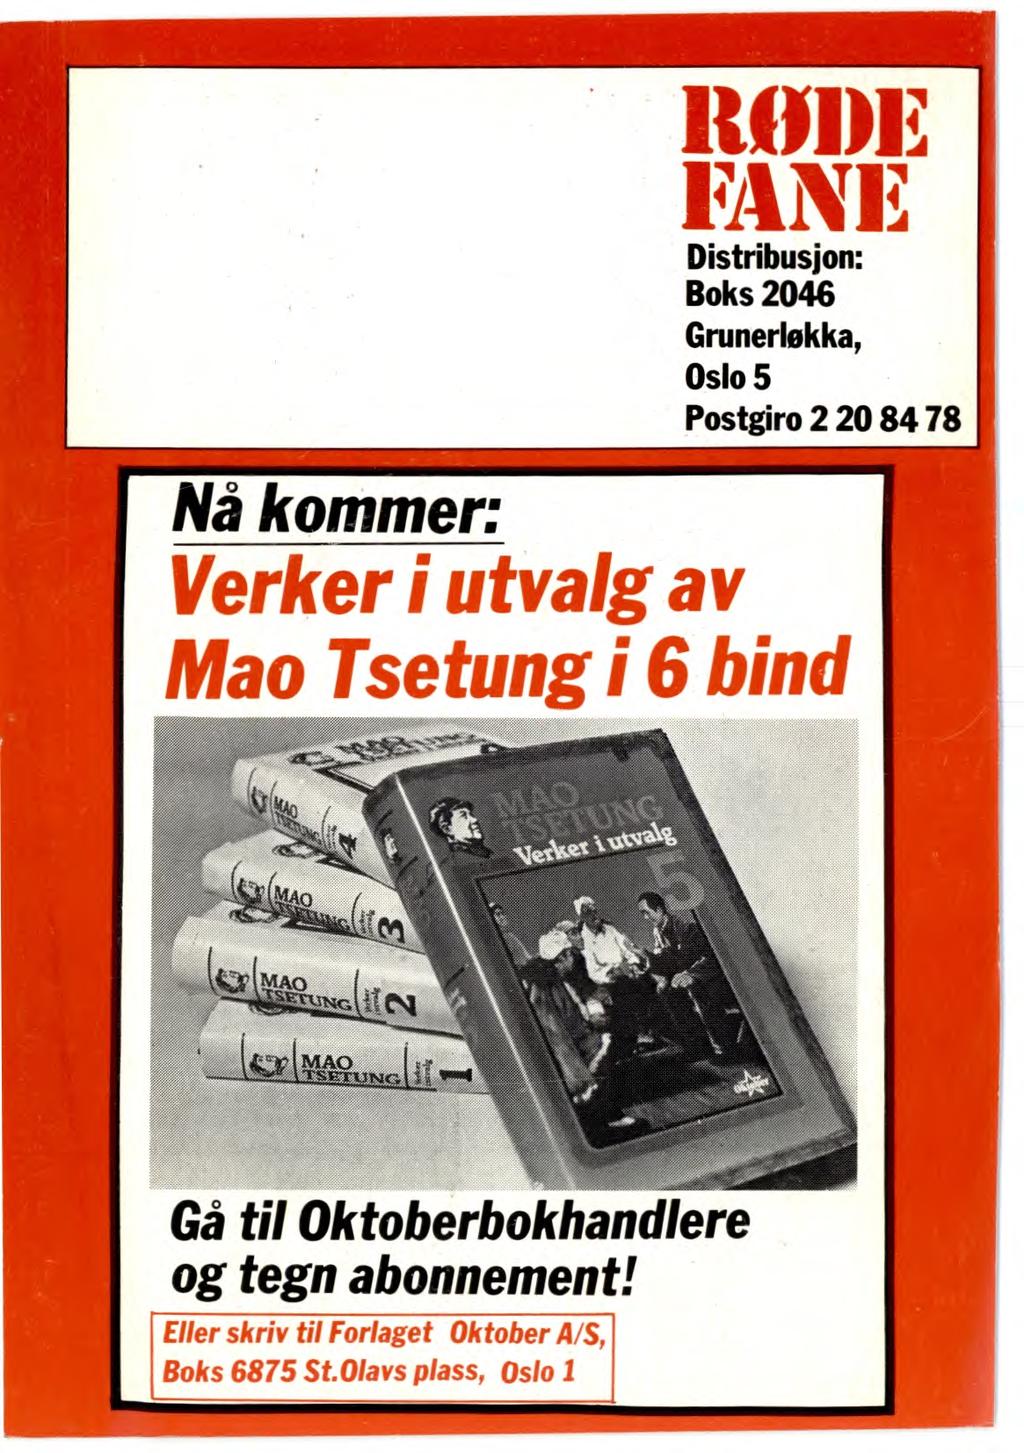 R1)1)1 EINE Distribusjon: Boks 2046 Grunerløkka, Oslo 5 Postgiro 2 20 84 78 Nå kommer: Verker i utvalg av Mao Tsetung i